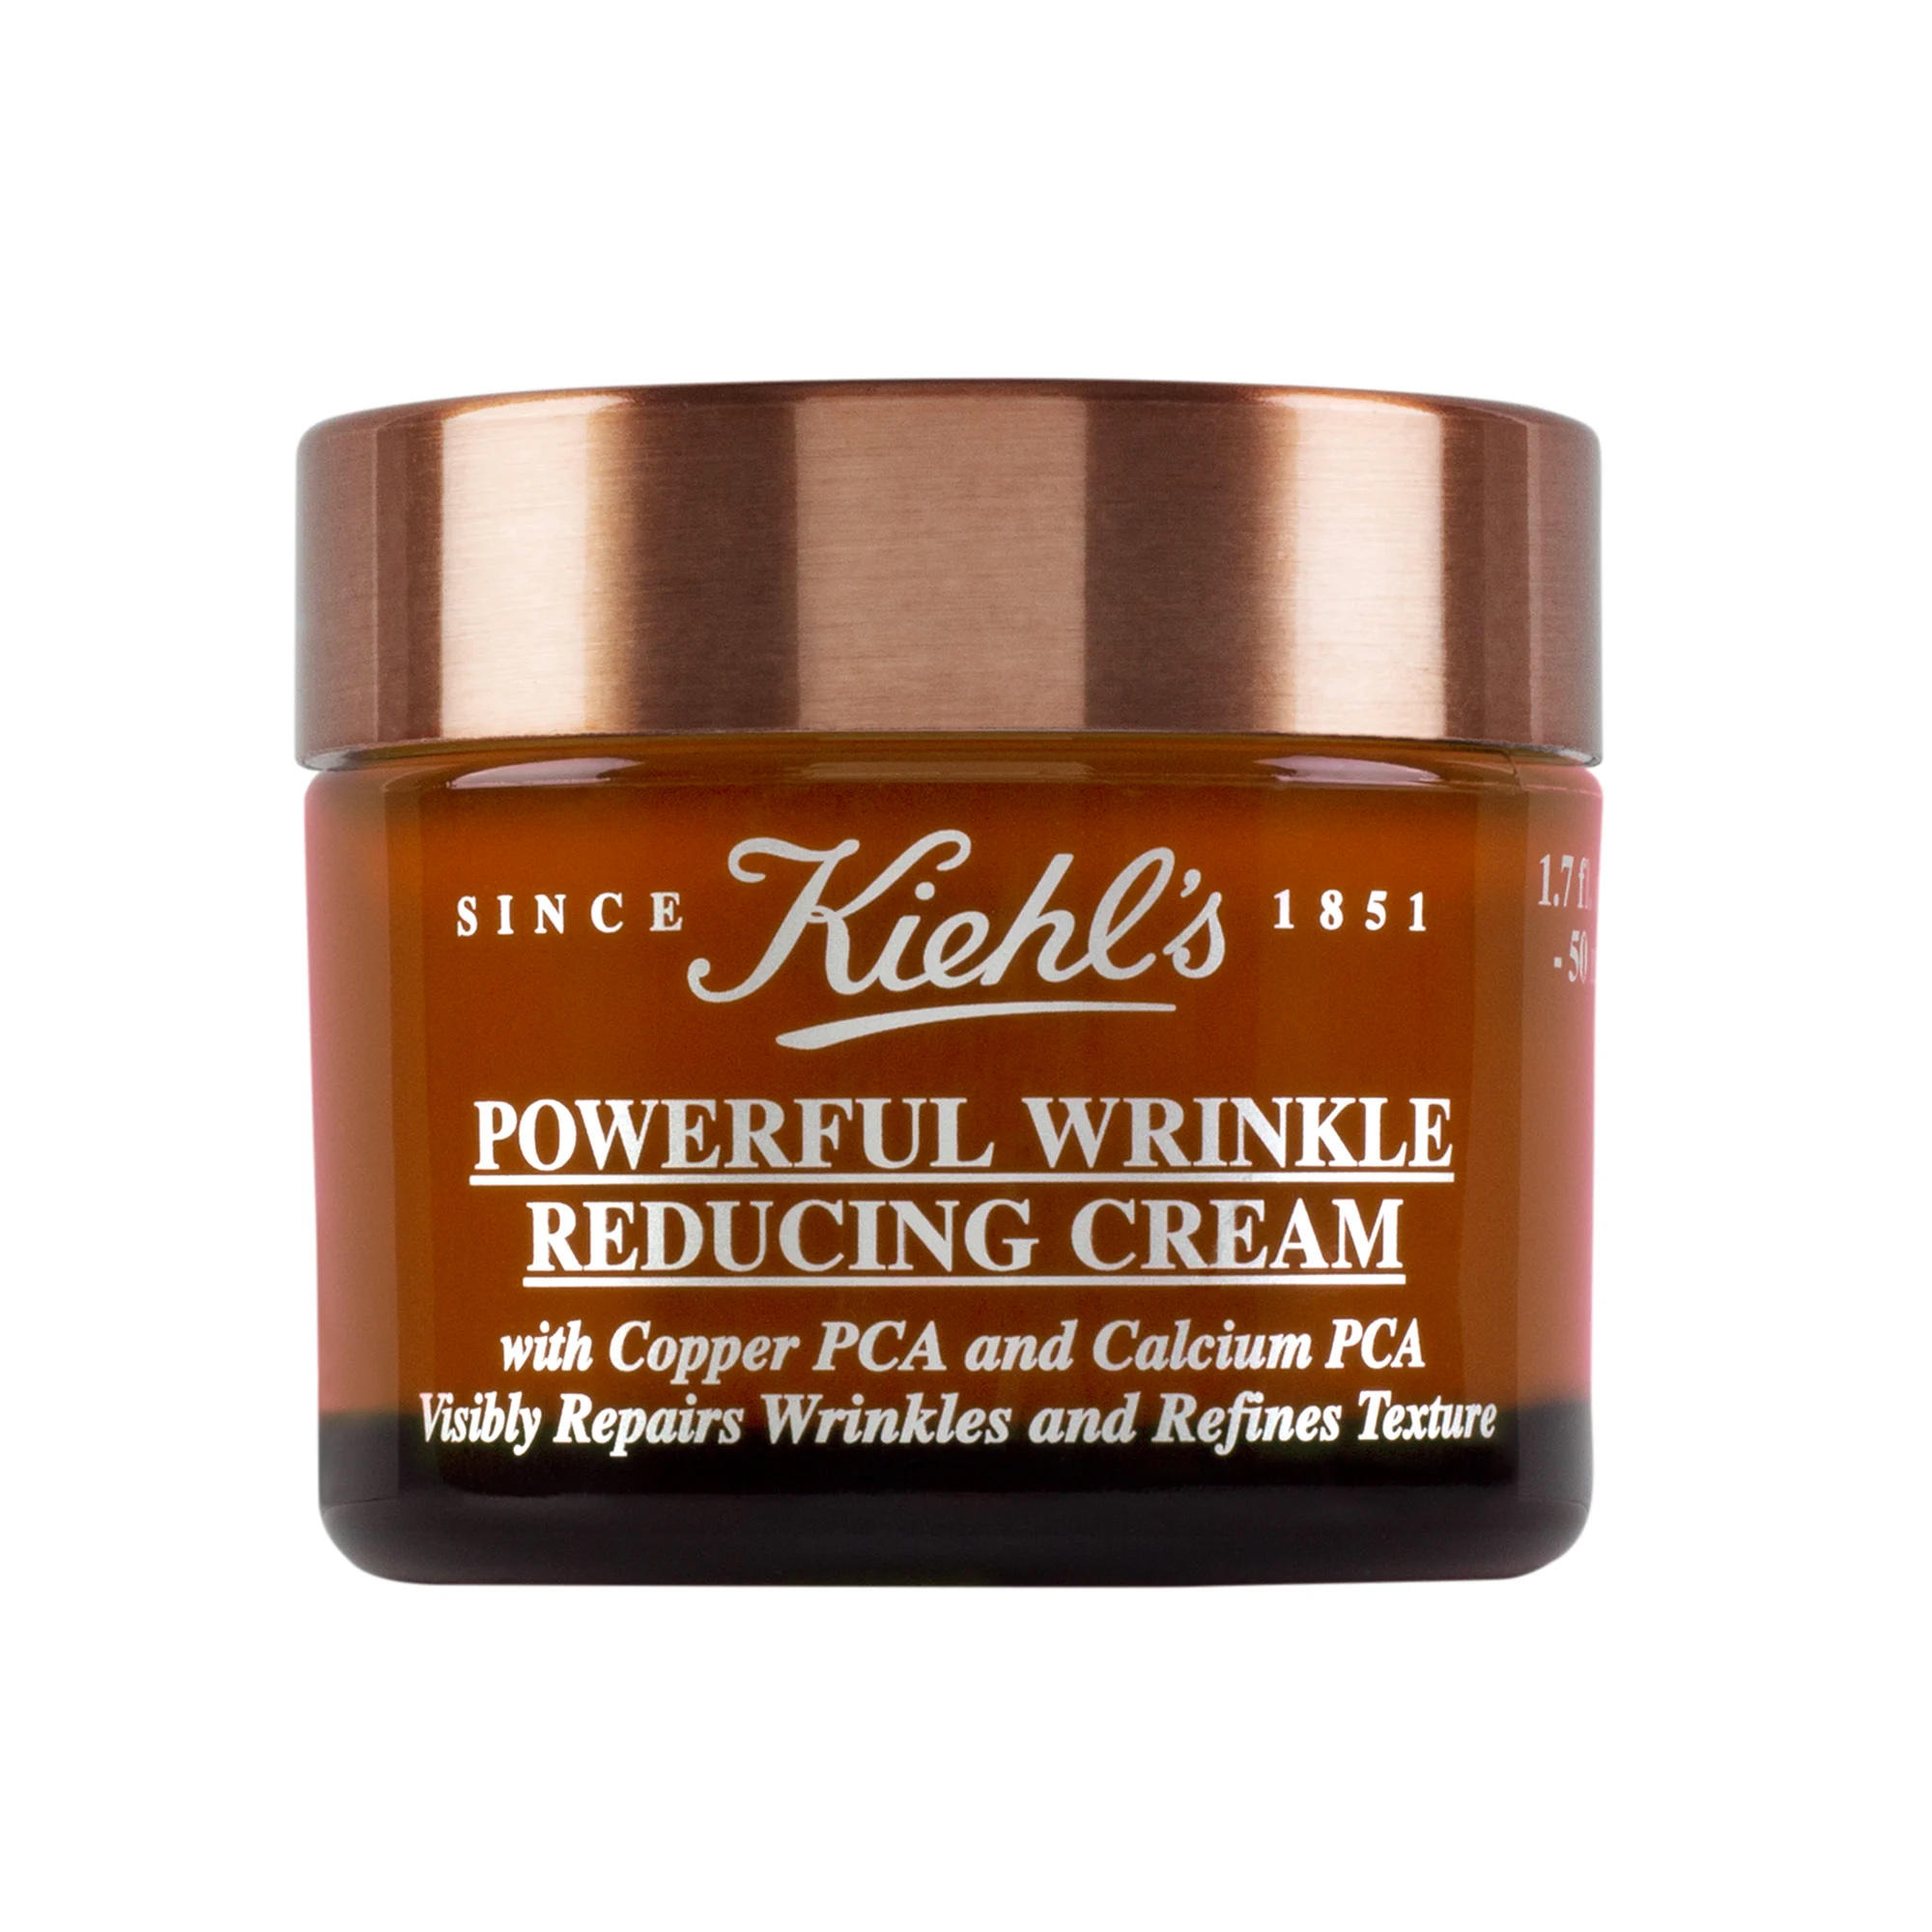 Kiehl's Powerful Wrinkle Reducing Cream Mini